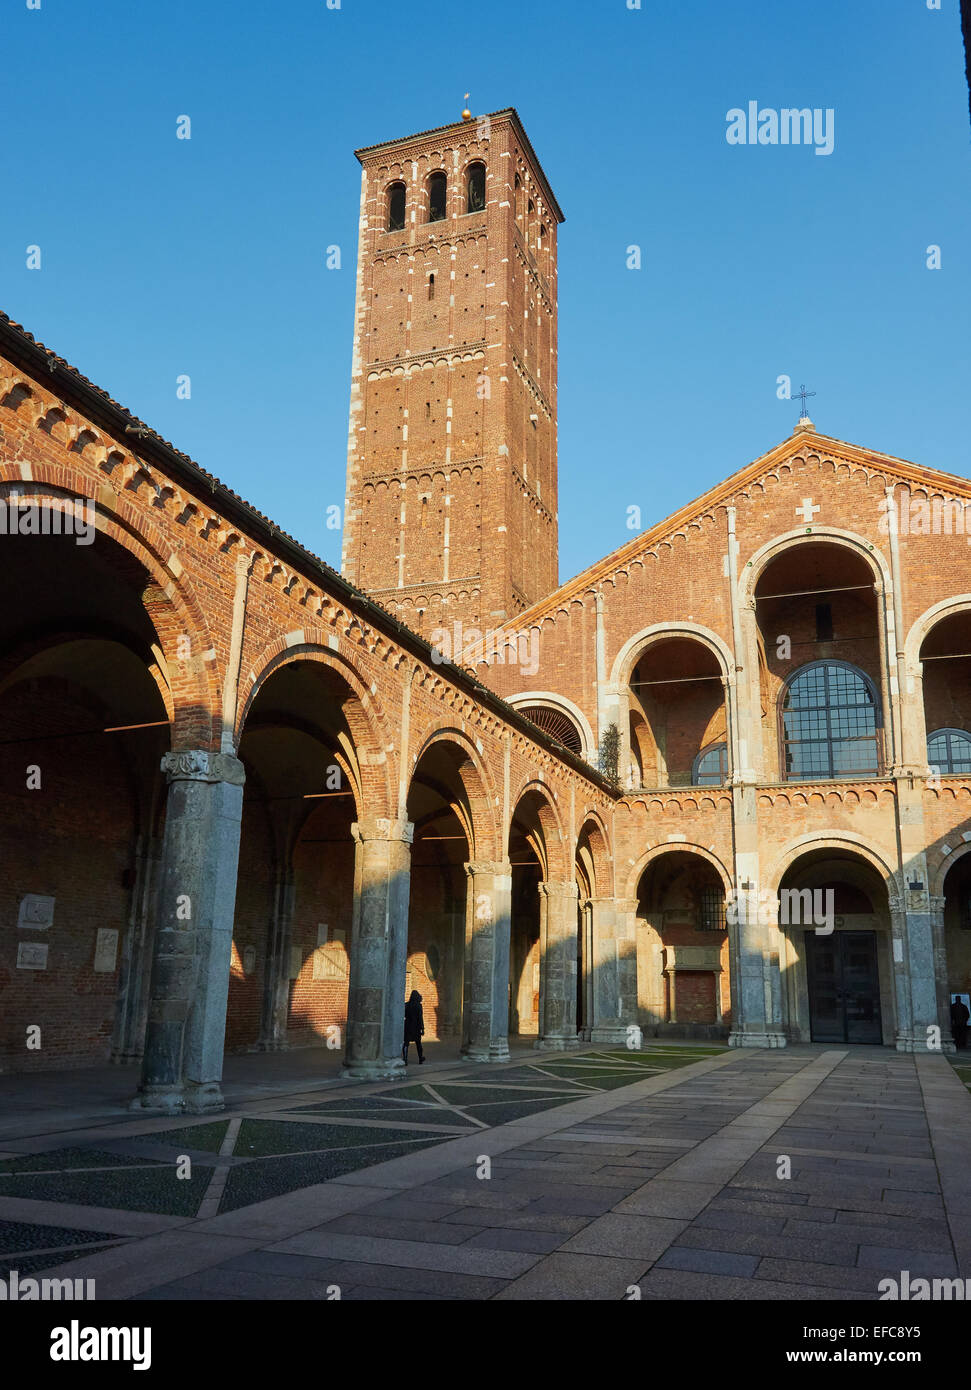 Atrio porticato cortile e campanile romanico di Sant' Ambrogio Basilica milano lombardia italia Europa Foto Stock